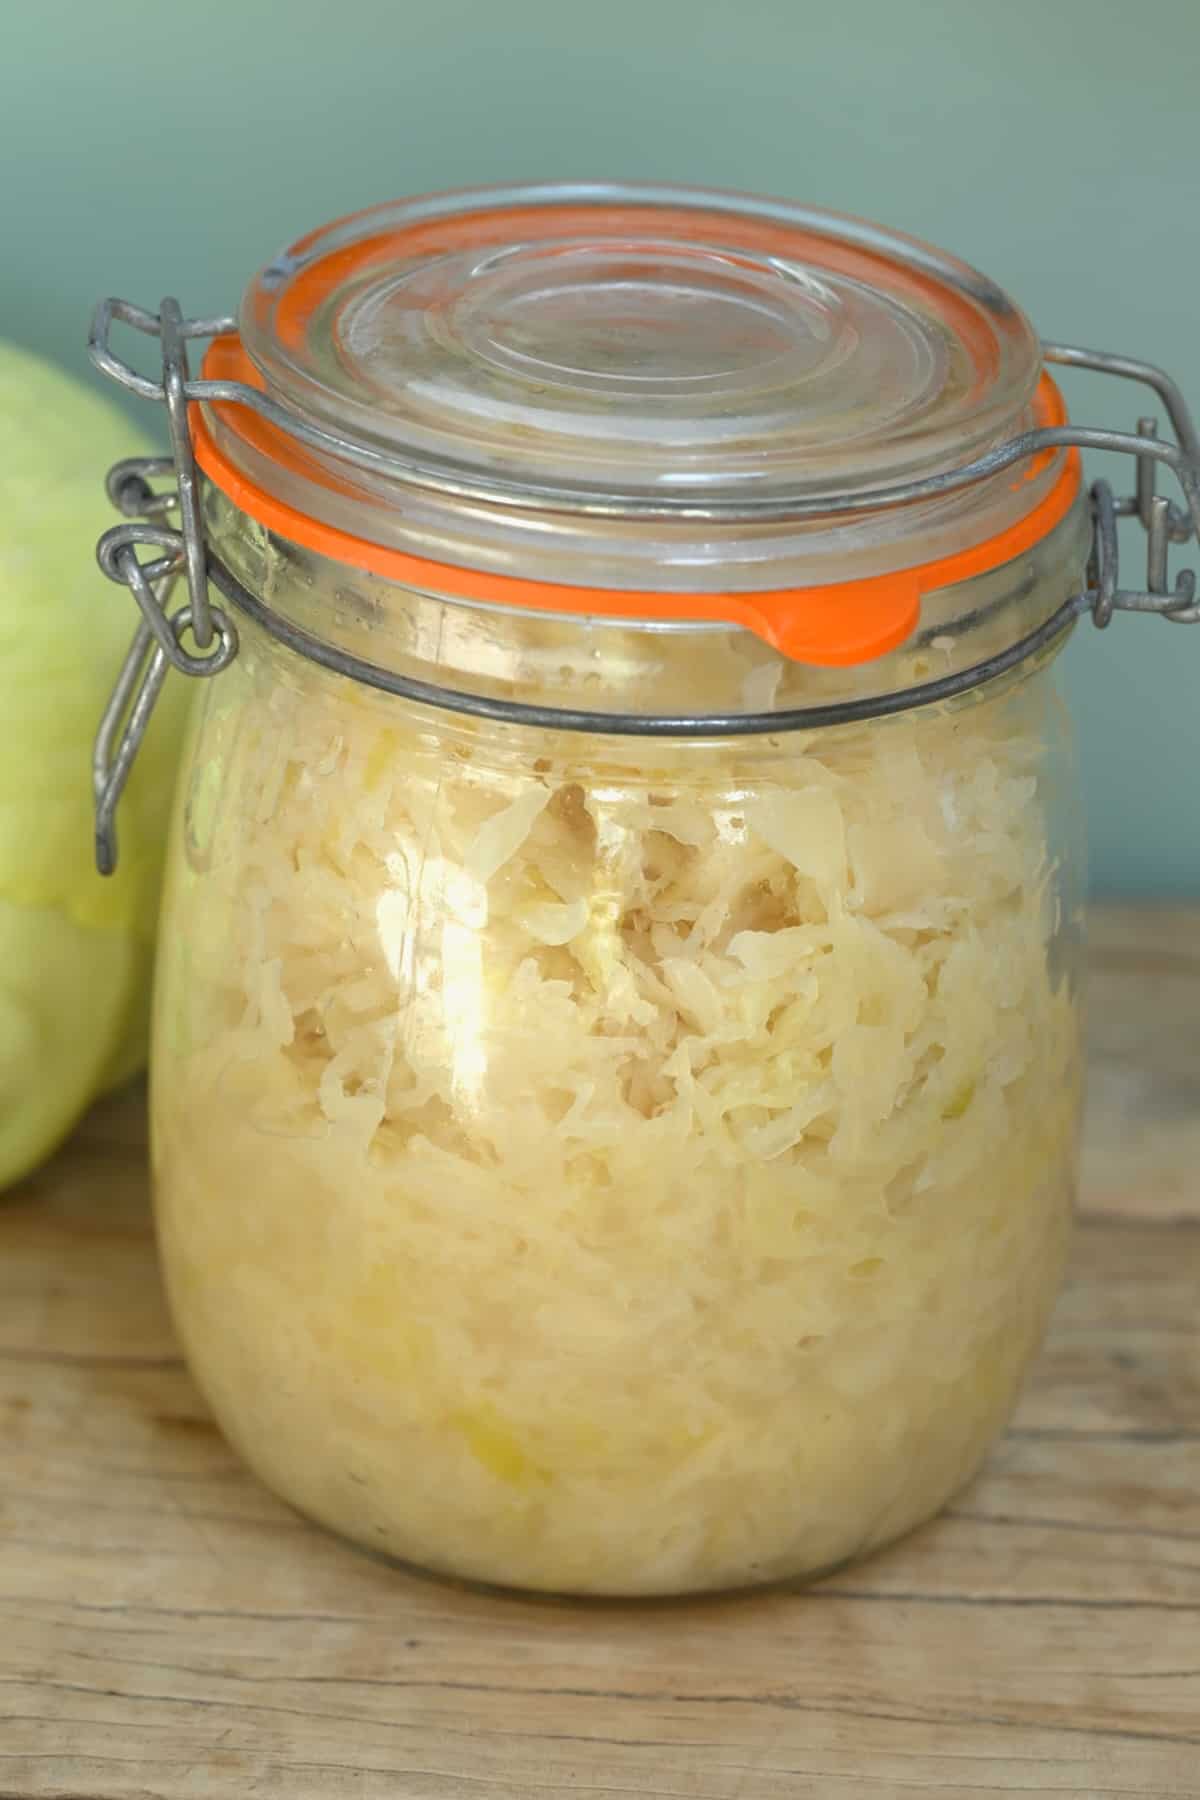 A jar with sauerkraut made at home